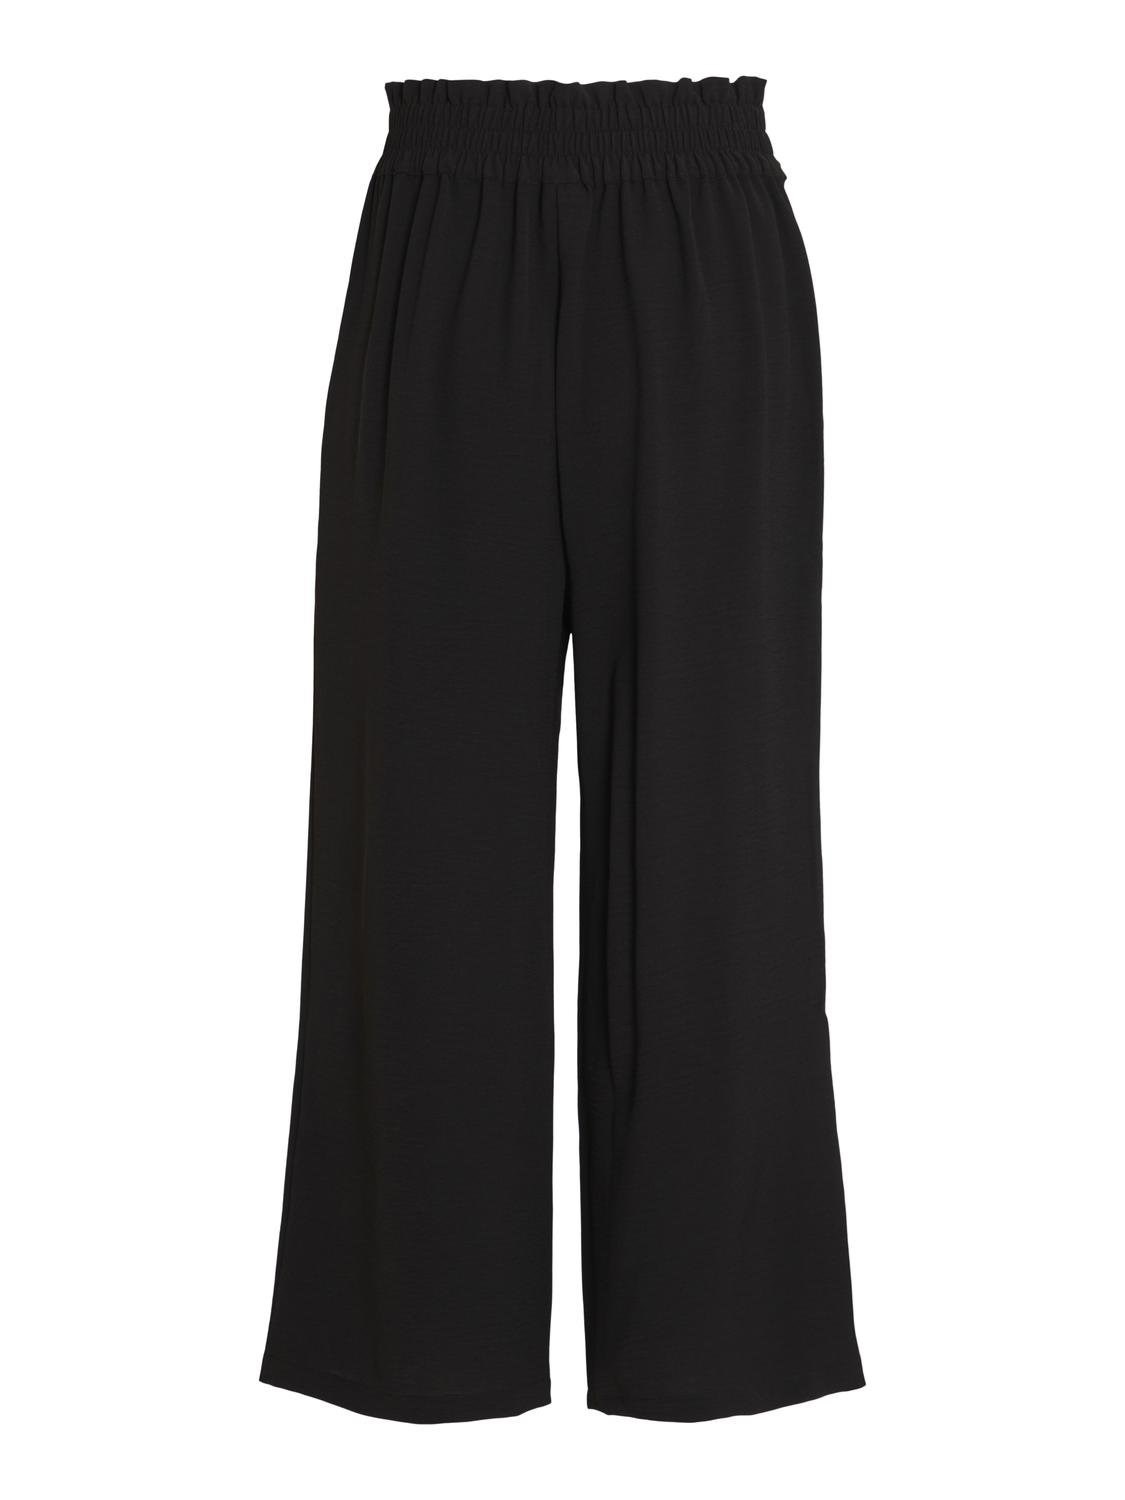 Pantalón Winnie culotte modelo 14092096 en color negro.